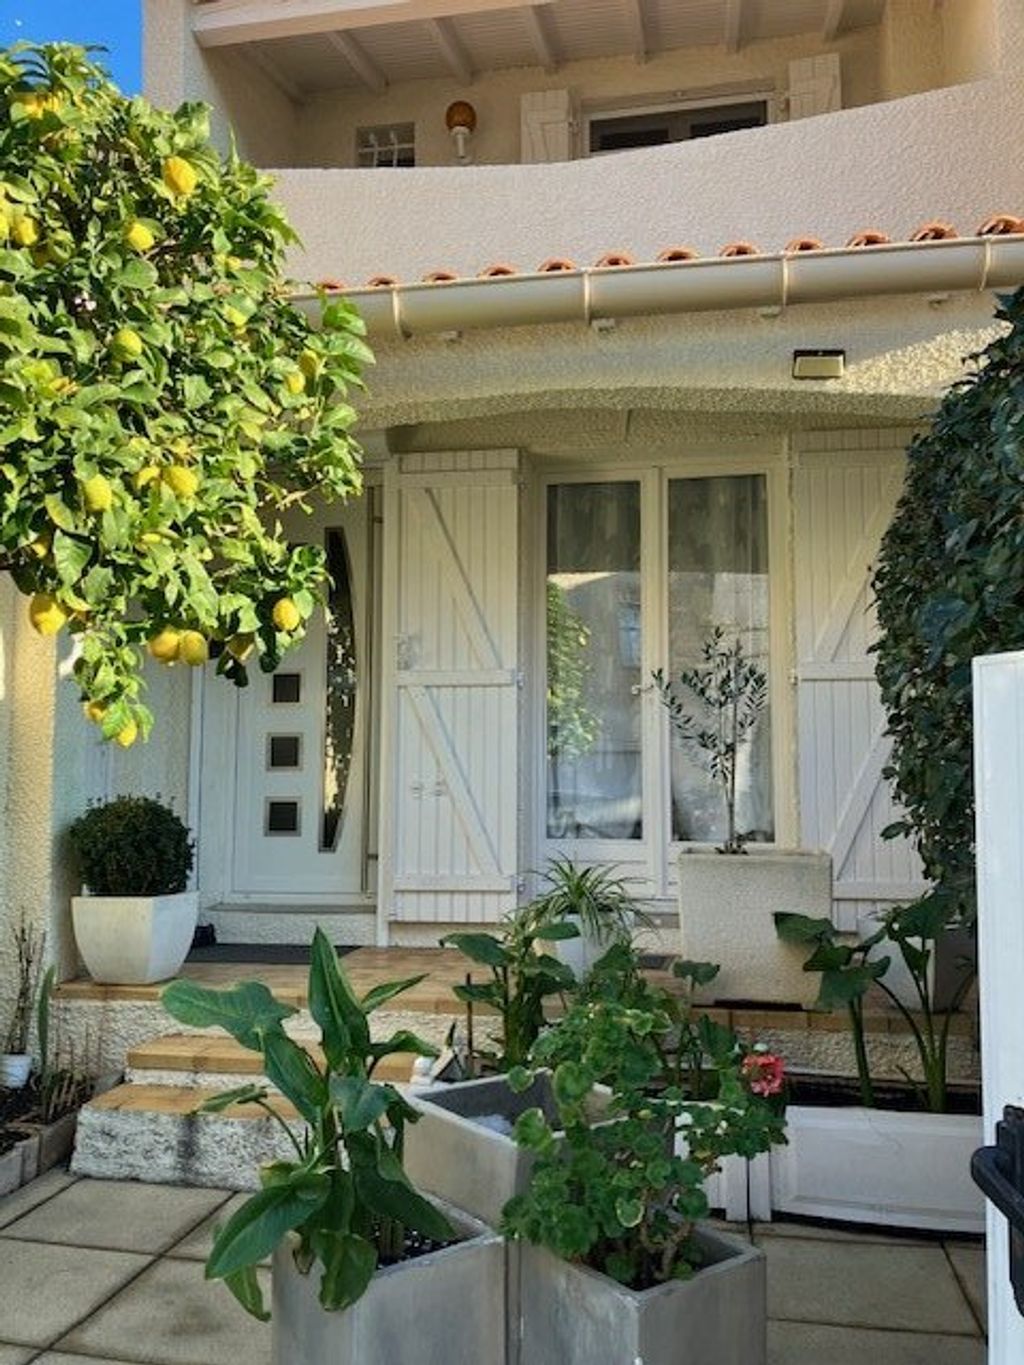 Achat maison à vendre 3 chambres 110 m² - Sète